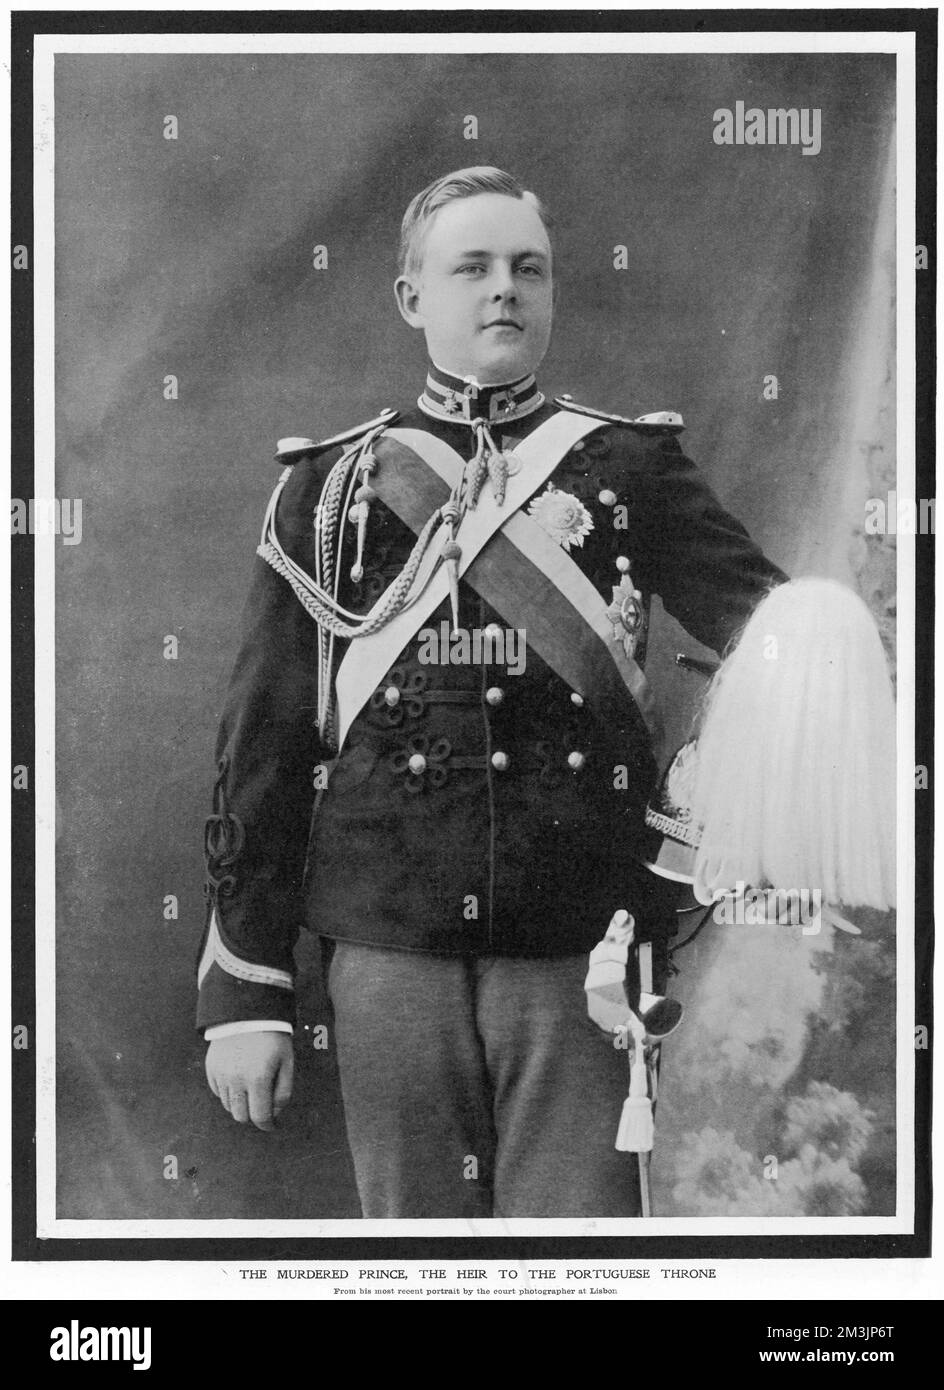 LUIS, KRONPRINZ (1887 - 1908), in Uniform fotografiert. Am 1. Februar 1908 wurde er zusammen mit seinem Vater, König Carlos I., von Republikanern ermordet. Stockfoto